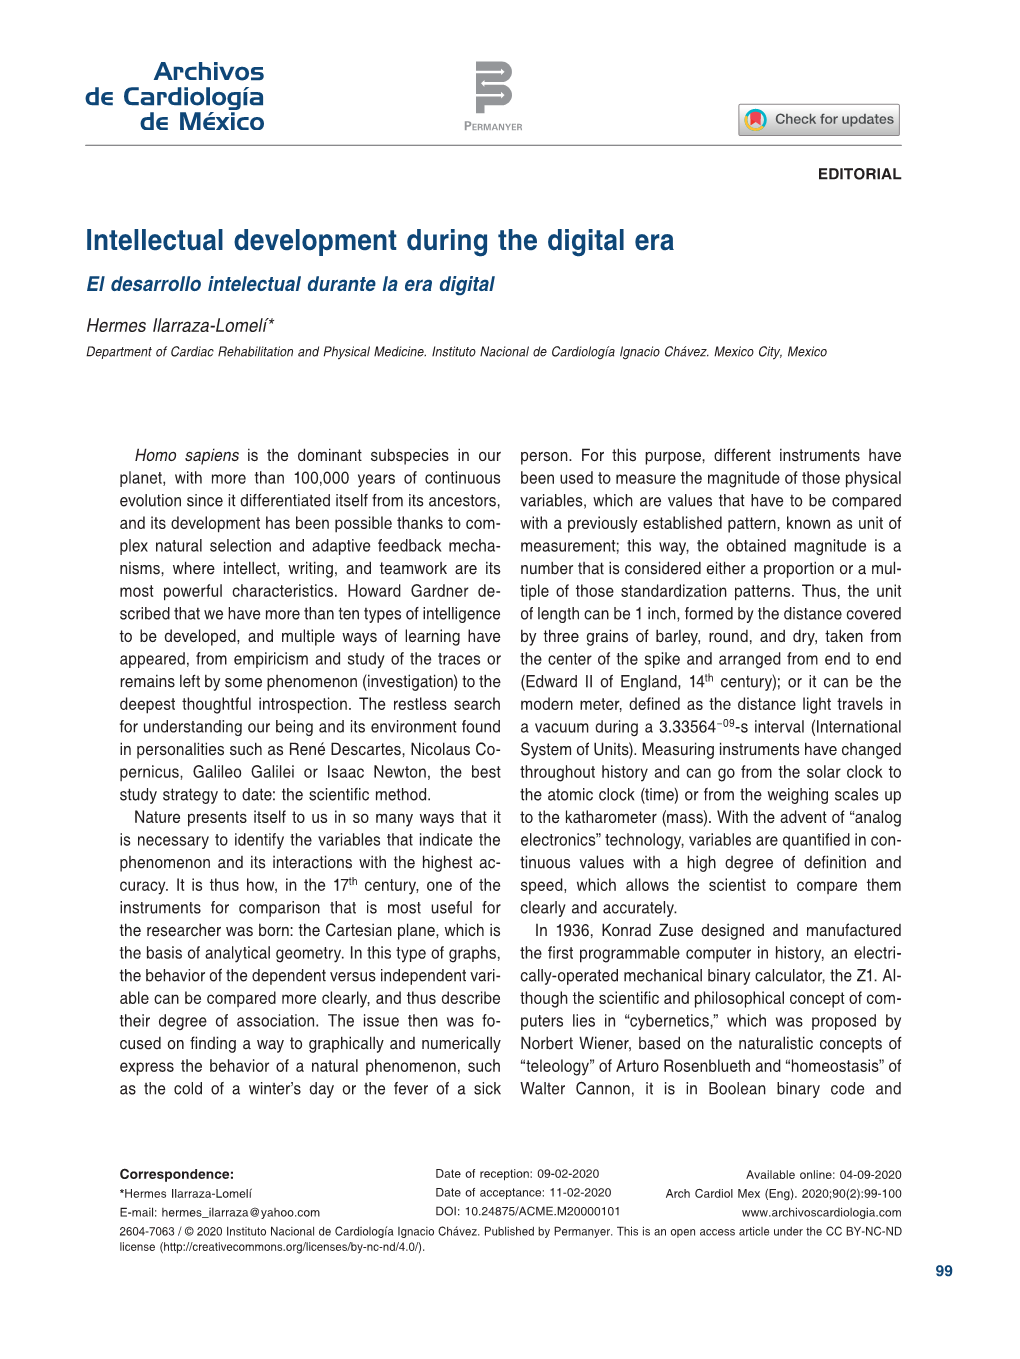 Intellectual Development During the Digital Era El Desarrollo Intelectual Durante La Era Digital